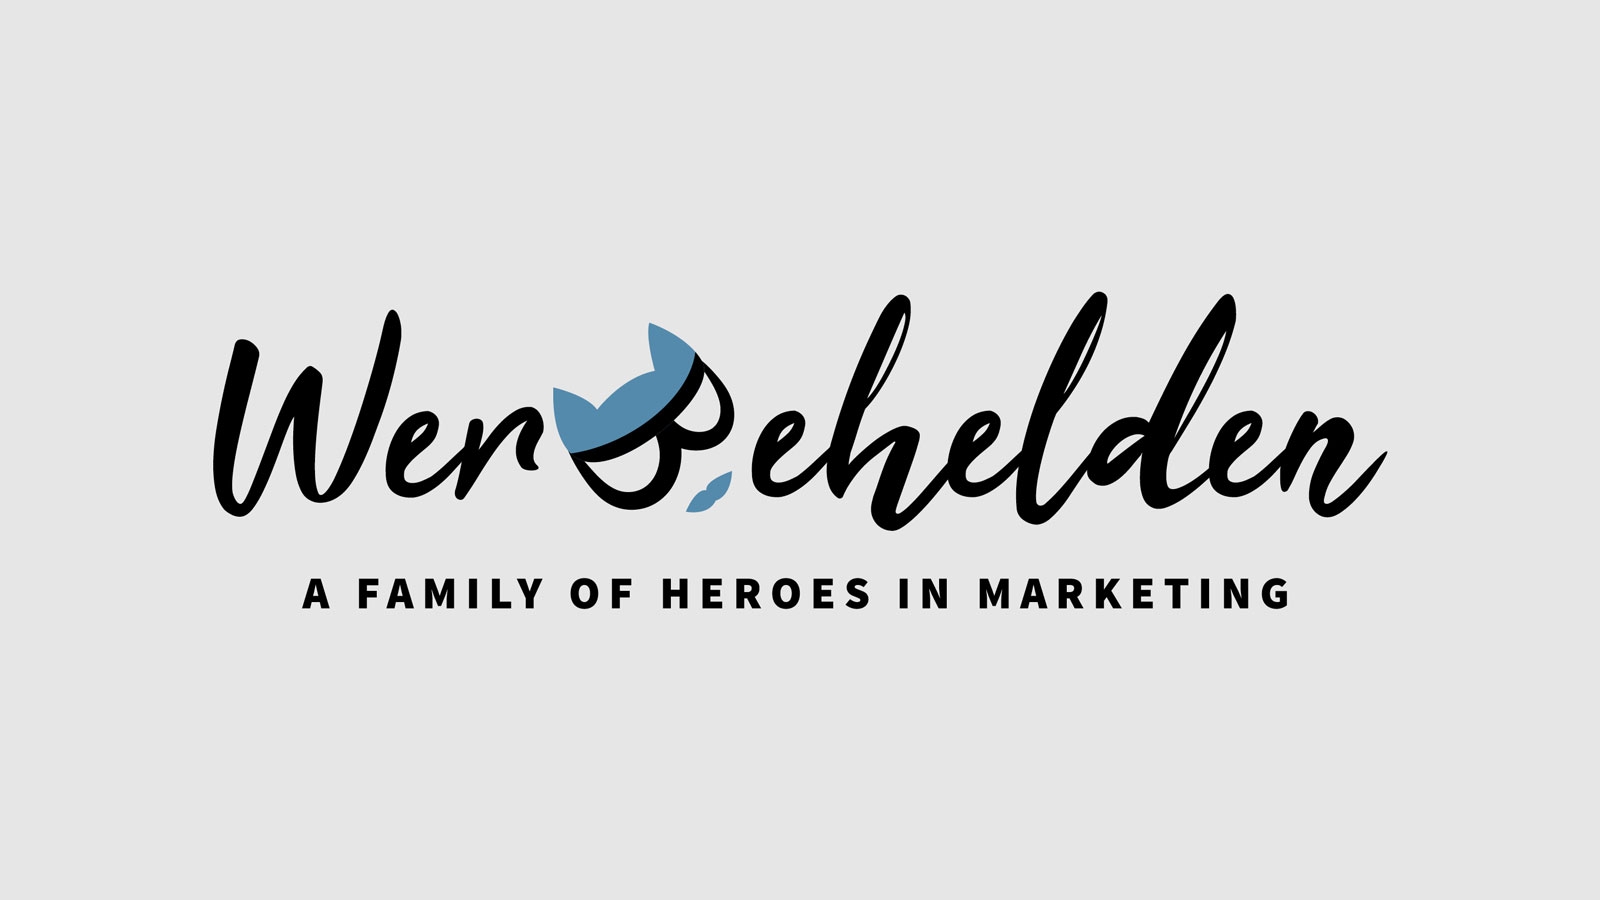 Werbehelden | werbehelden.com | 2019 (Logo) © echonet communication